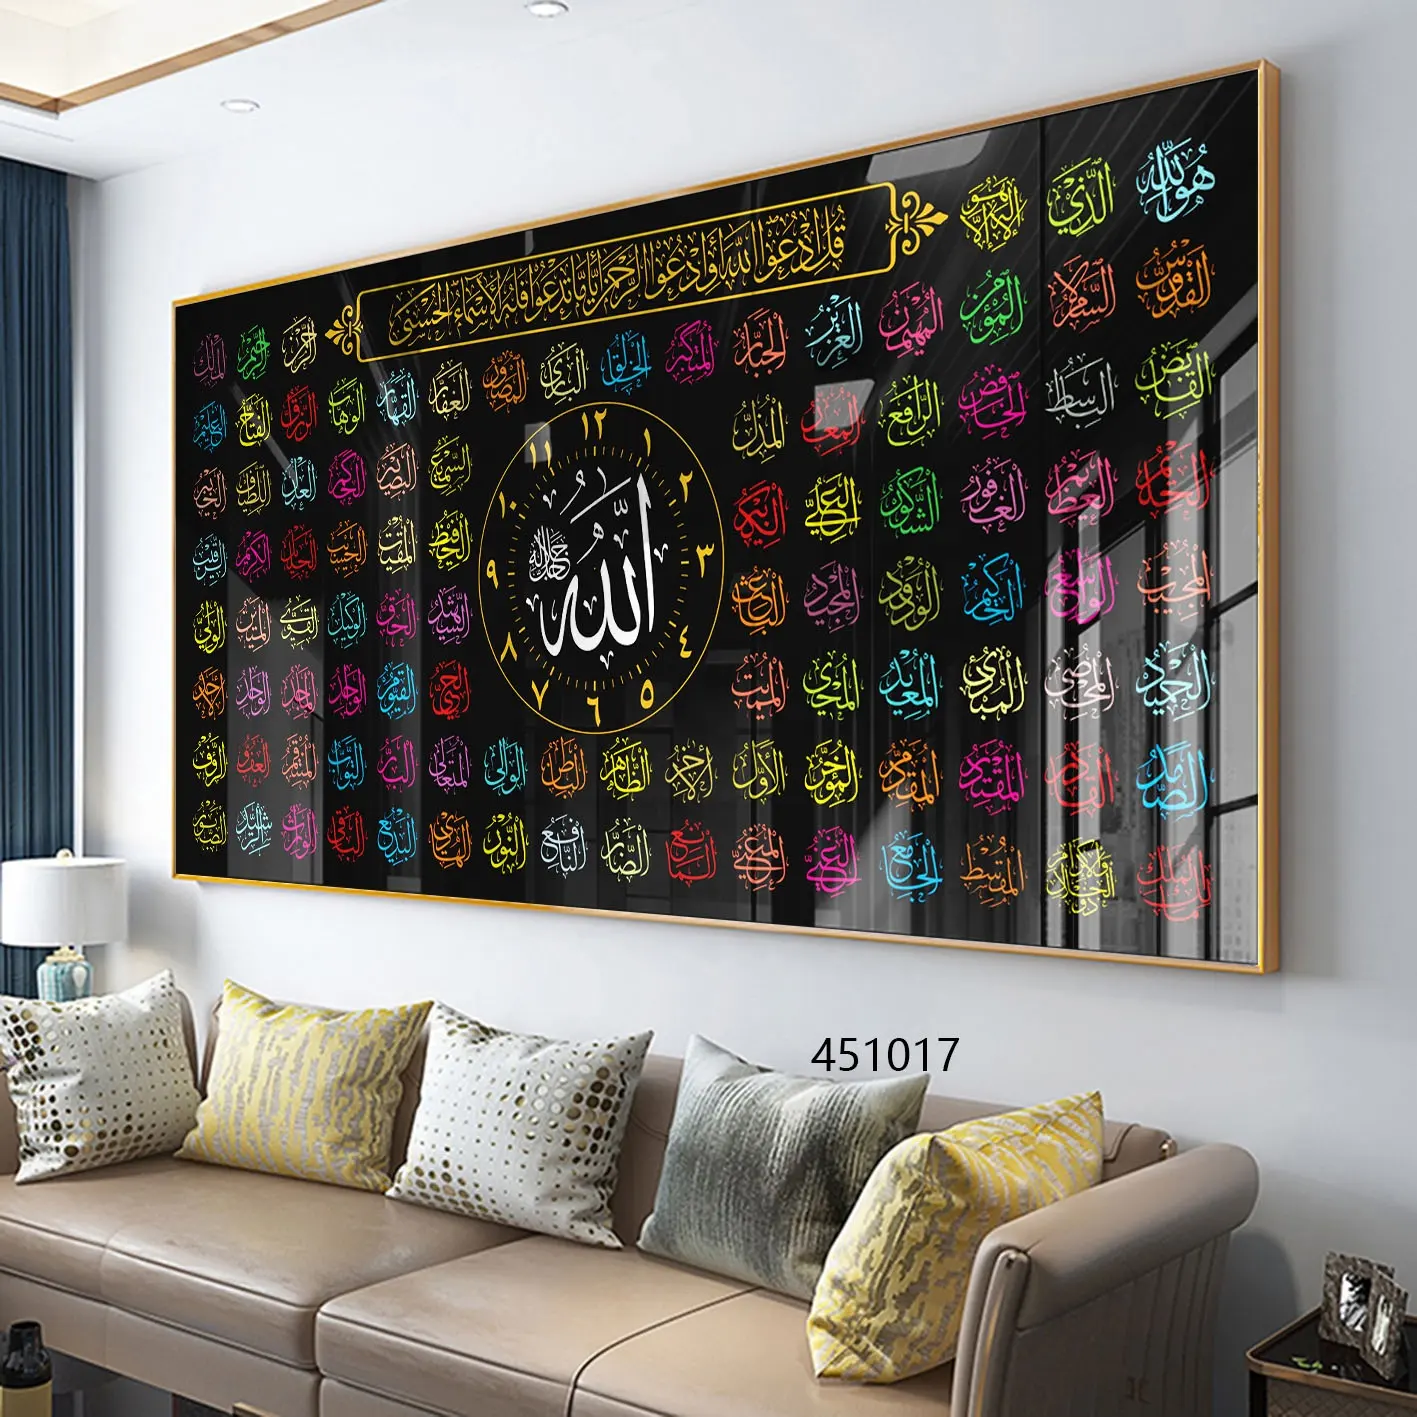 이슬람 이슬람 홈 장식 이슬람 아트 아랍어 서예 인쇄 이슬람 크리스탈 도자기 그림 벽 예술